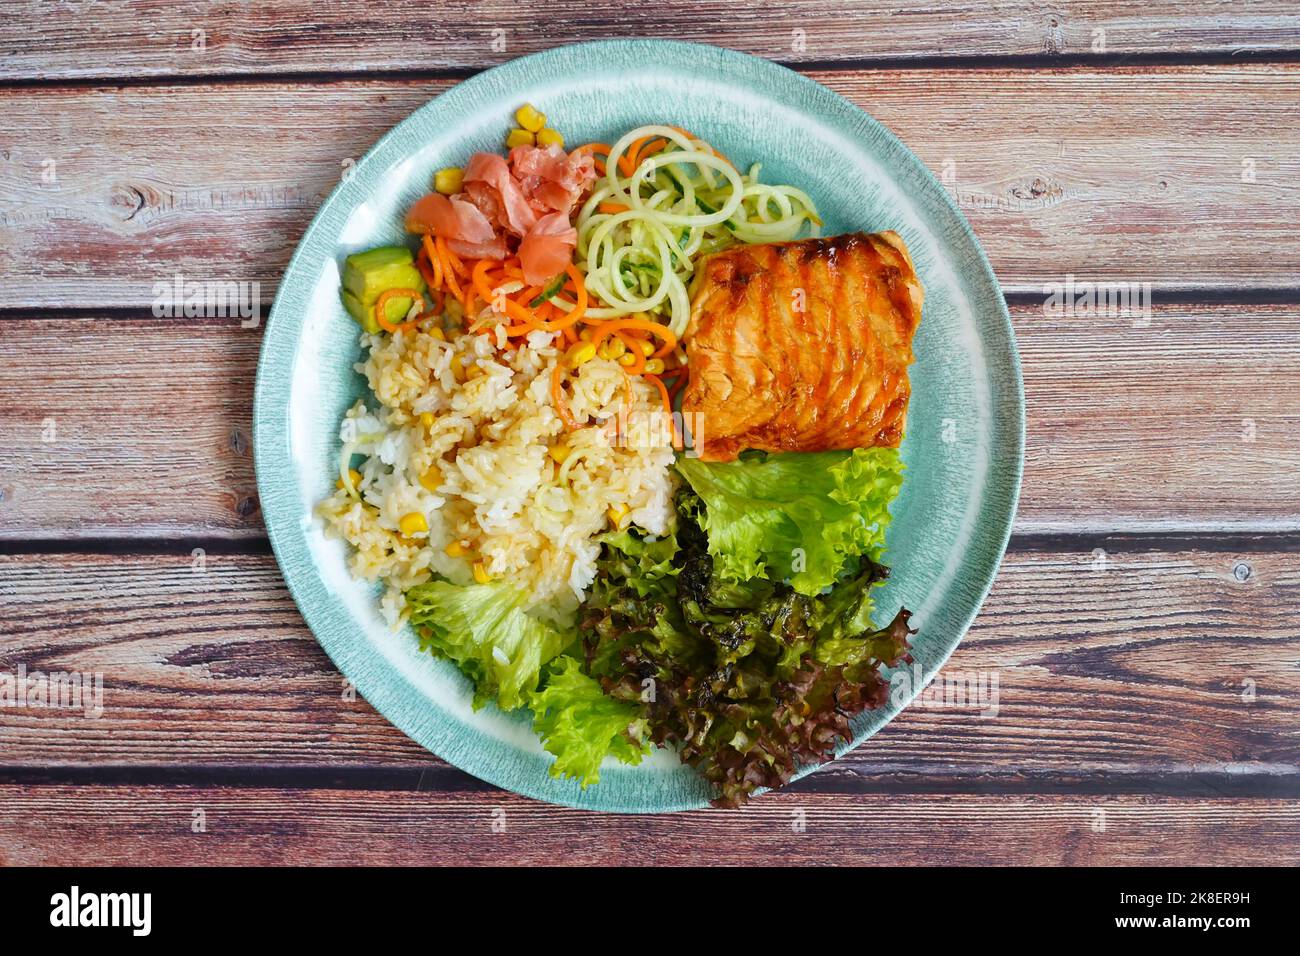 Alimentación equilibrada cocinada en casa: Salmón a la parrilla, arroz, verduras y ensalada. Foto de stock